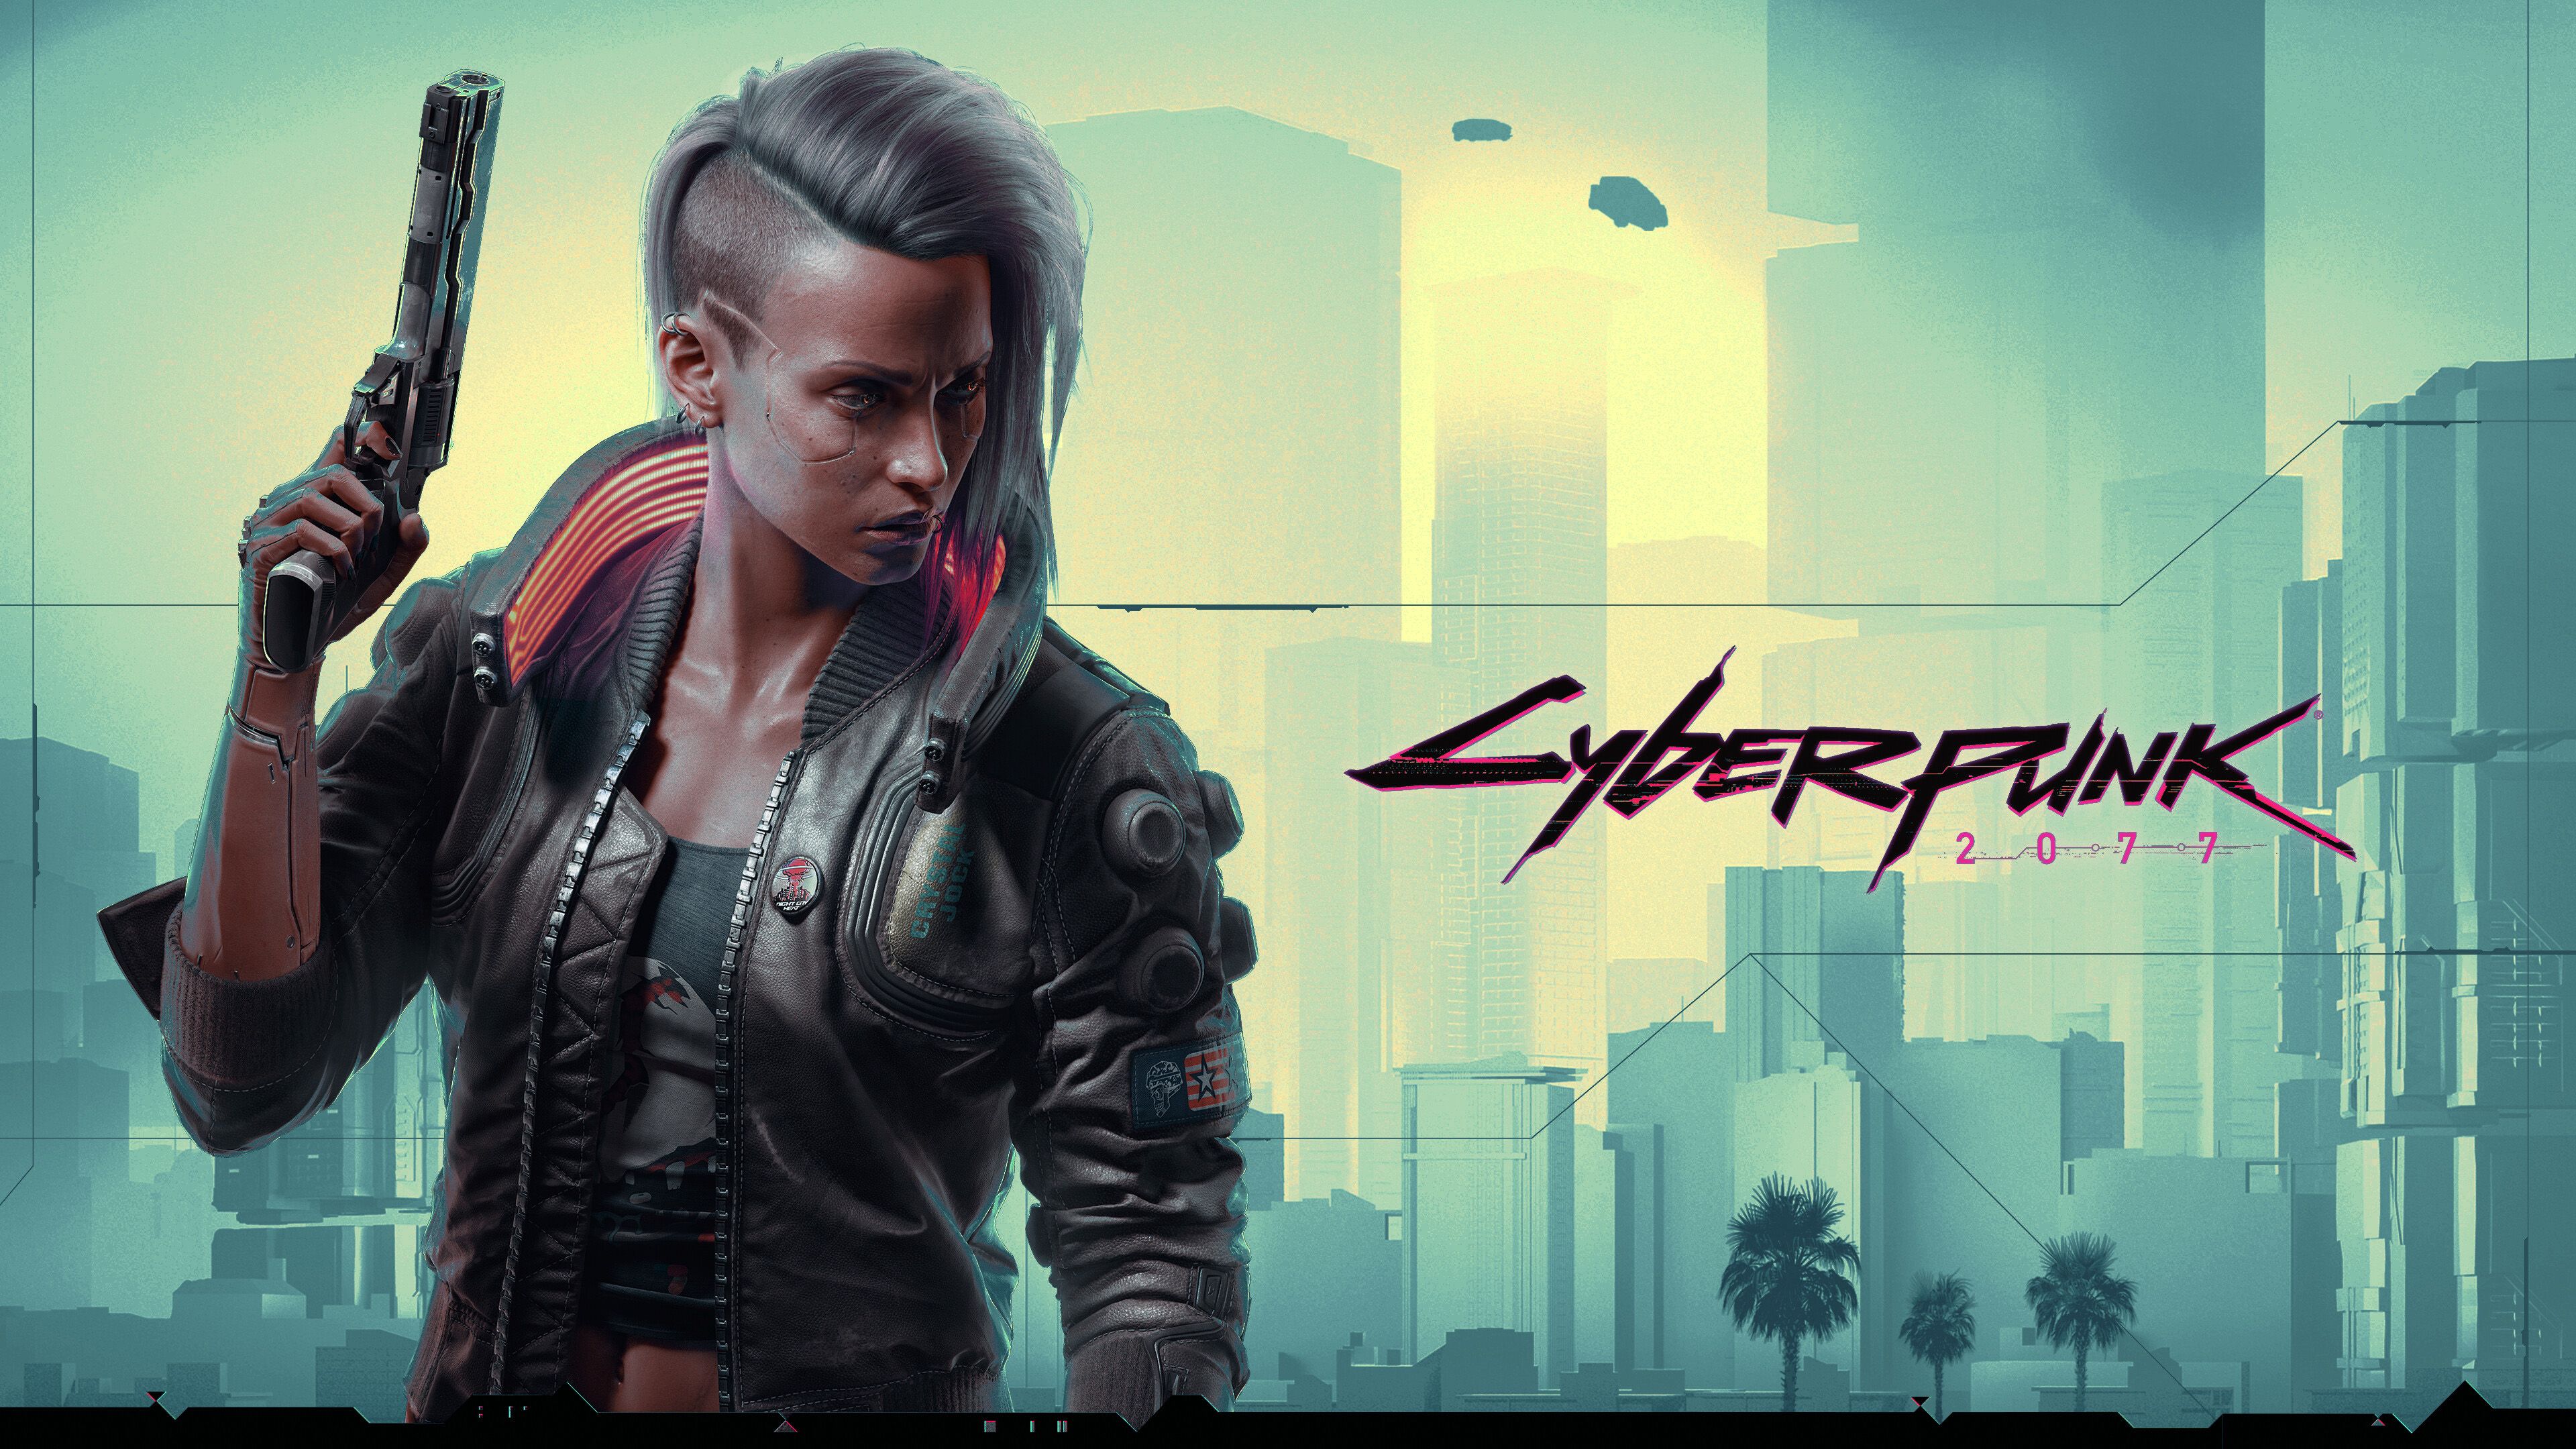 Cyberpunk 2077 Female V 4K, 5K, 8K, Desktop & Mobile Background Wallpaper